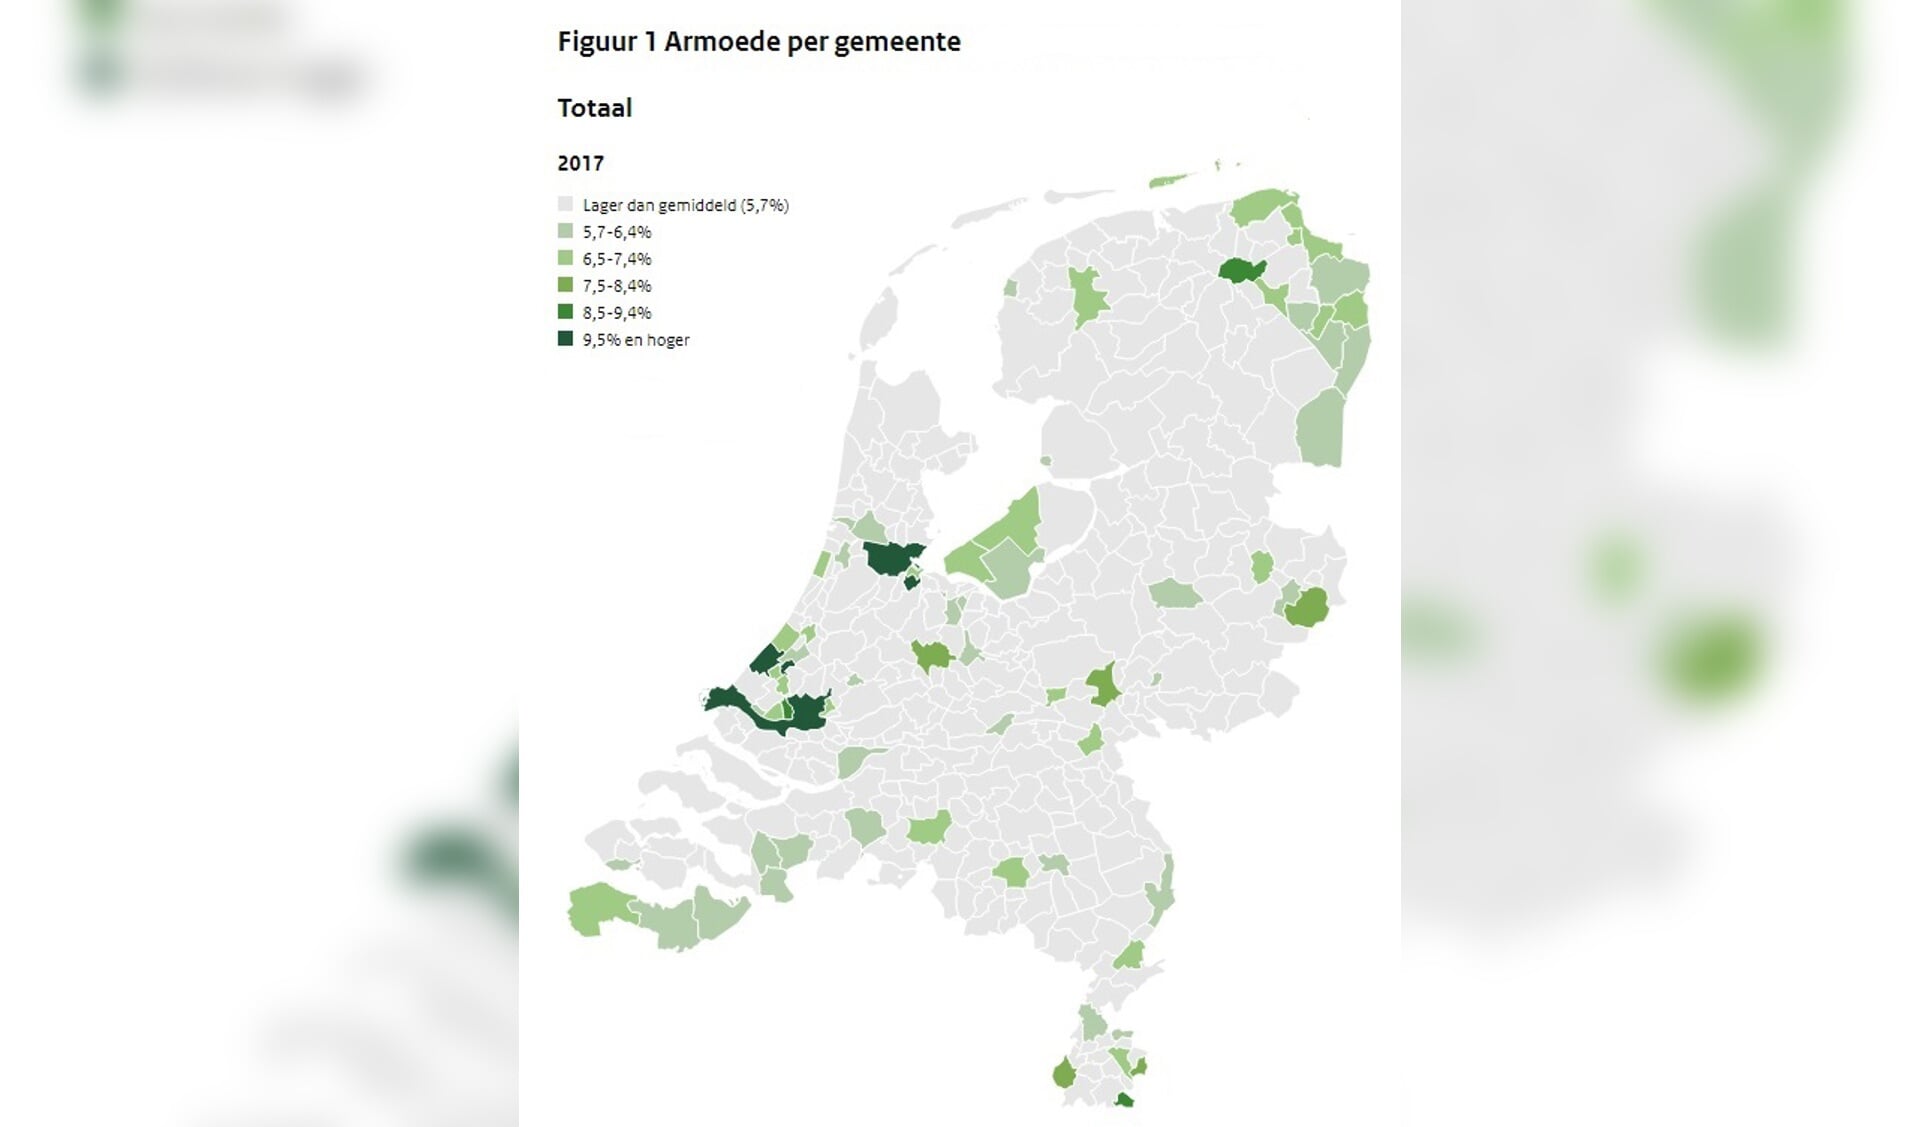 Armoede komt met name voor in de grote steden en de periferie, de grensregio’s Oost-Groningen en Oost-Drenthe, Zuid-Limburg en Zeeuws-Vlaanderen. (Bron: CPB)